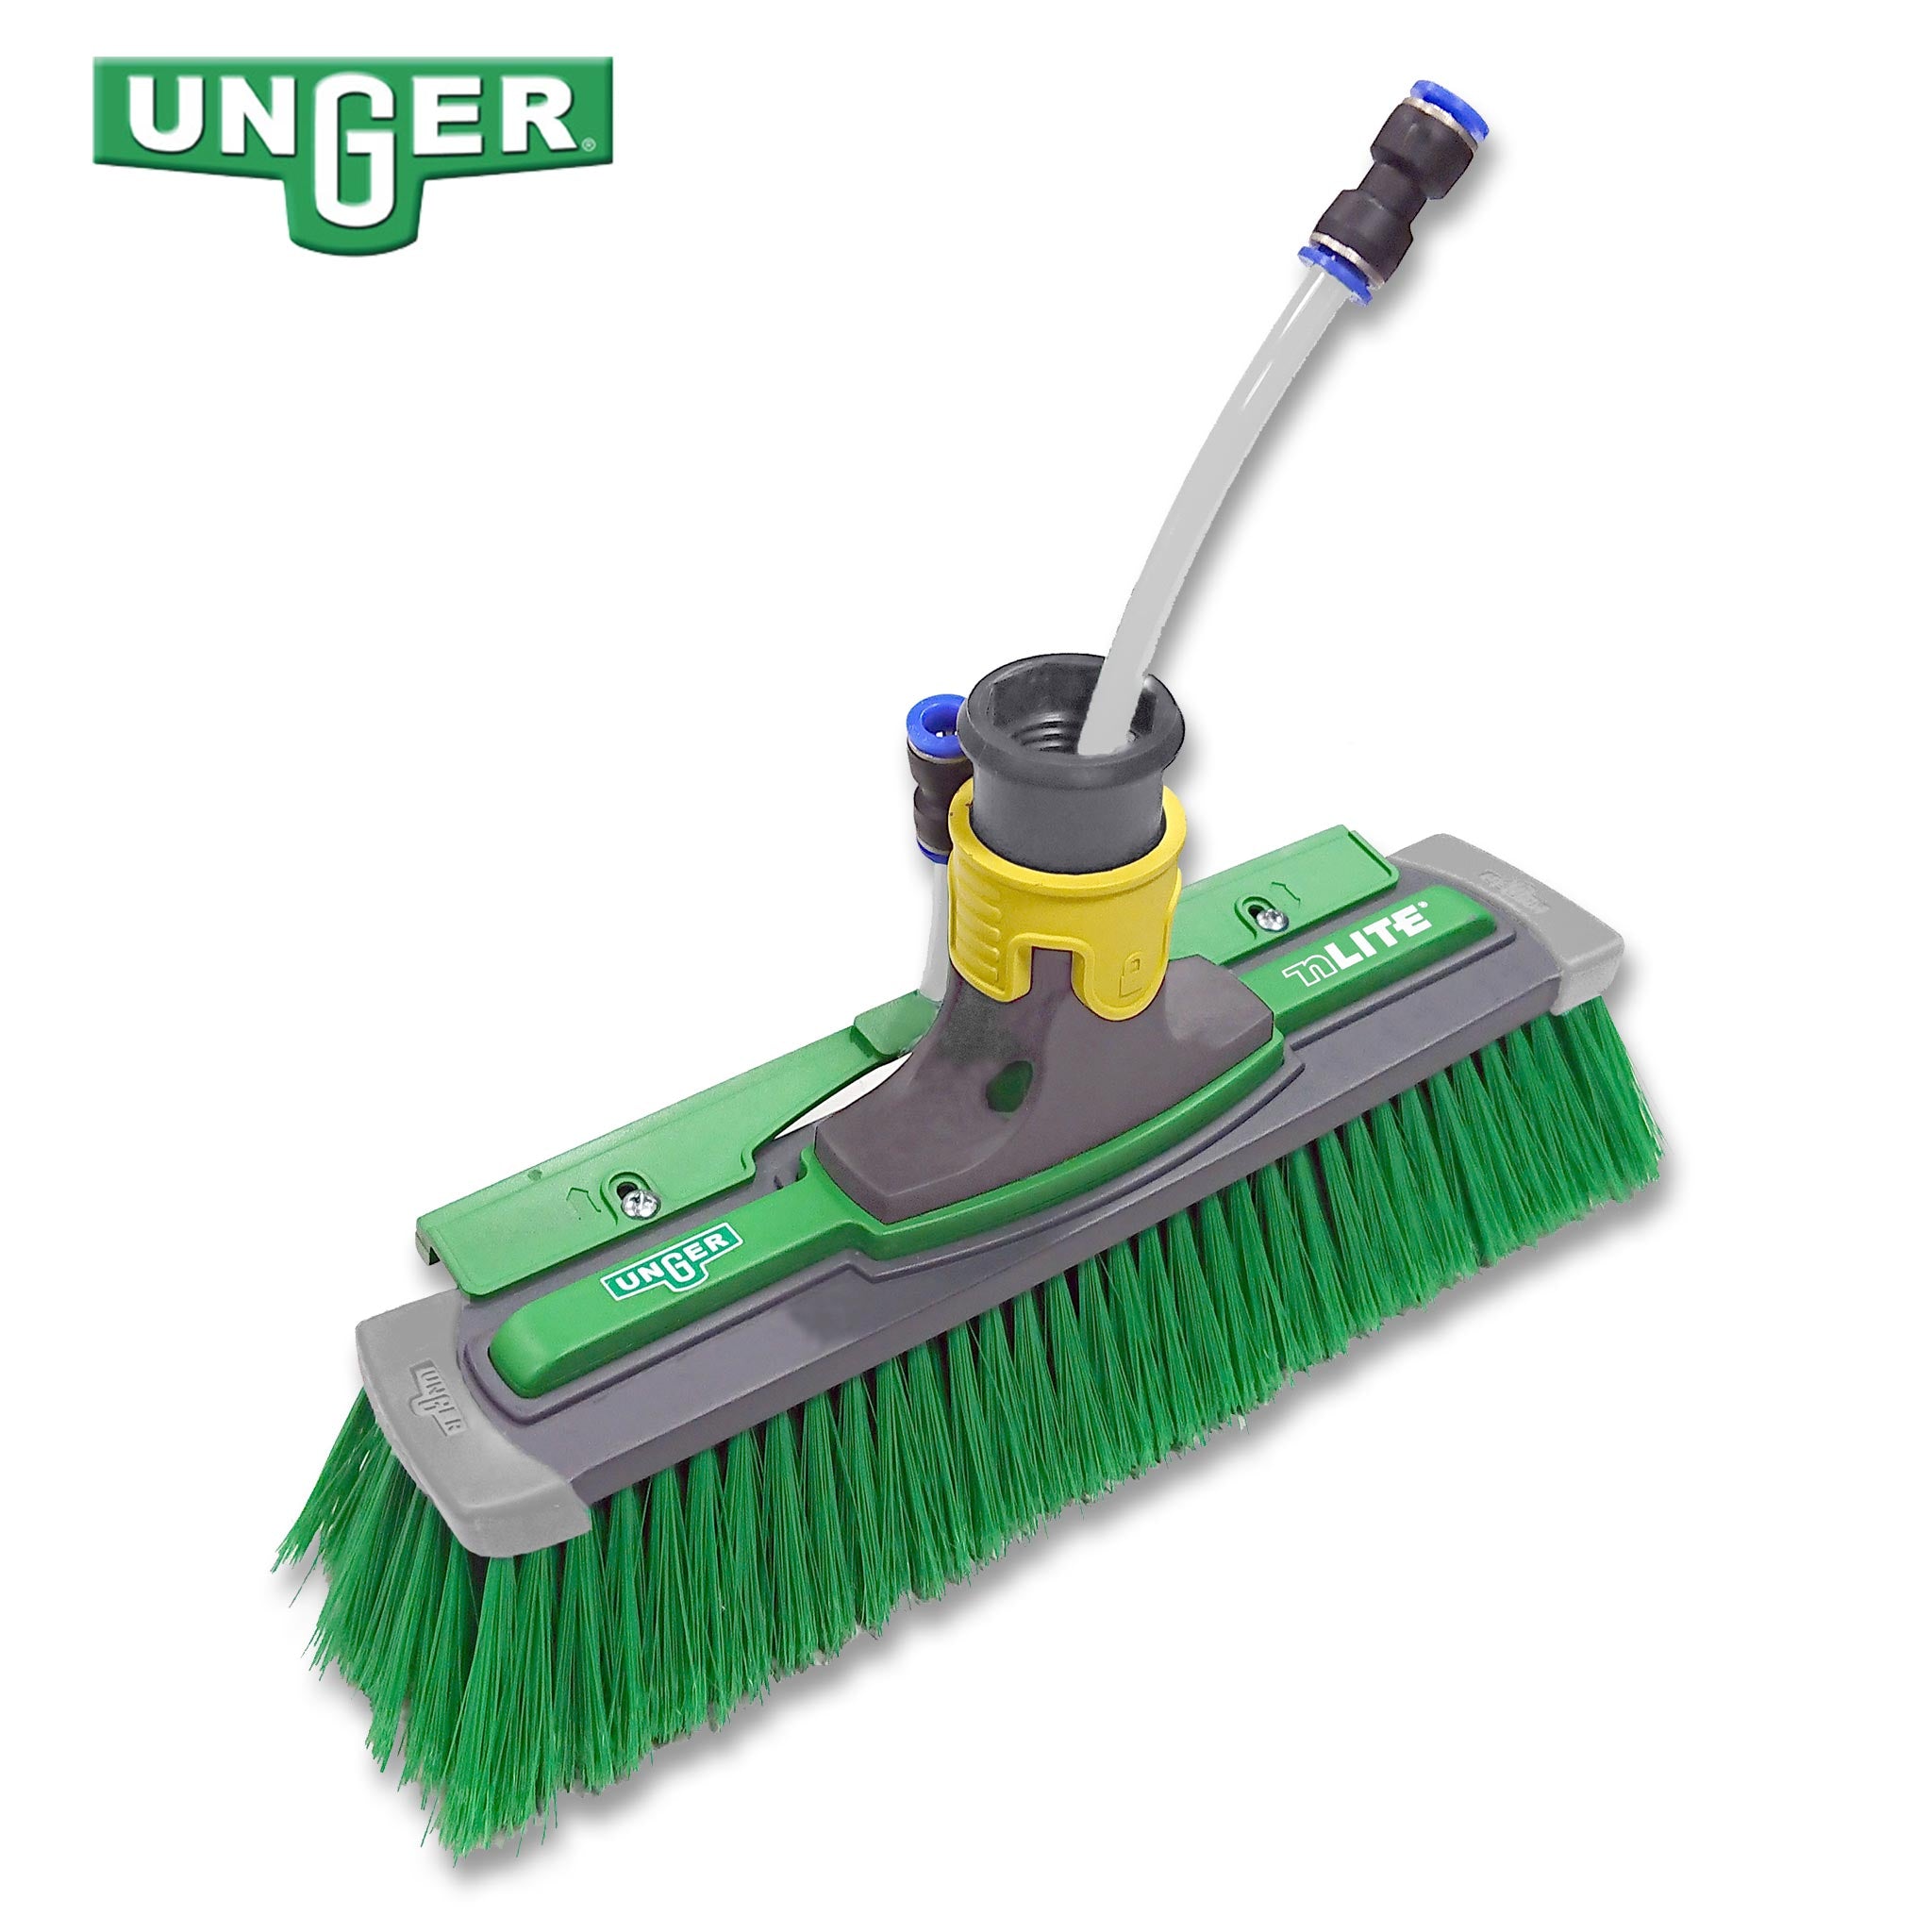 Unger nLite Power Brush – Extra